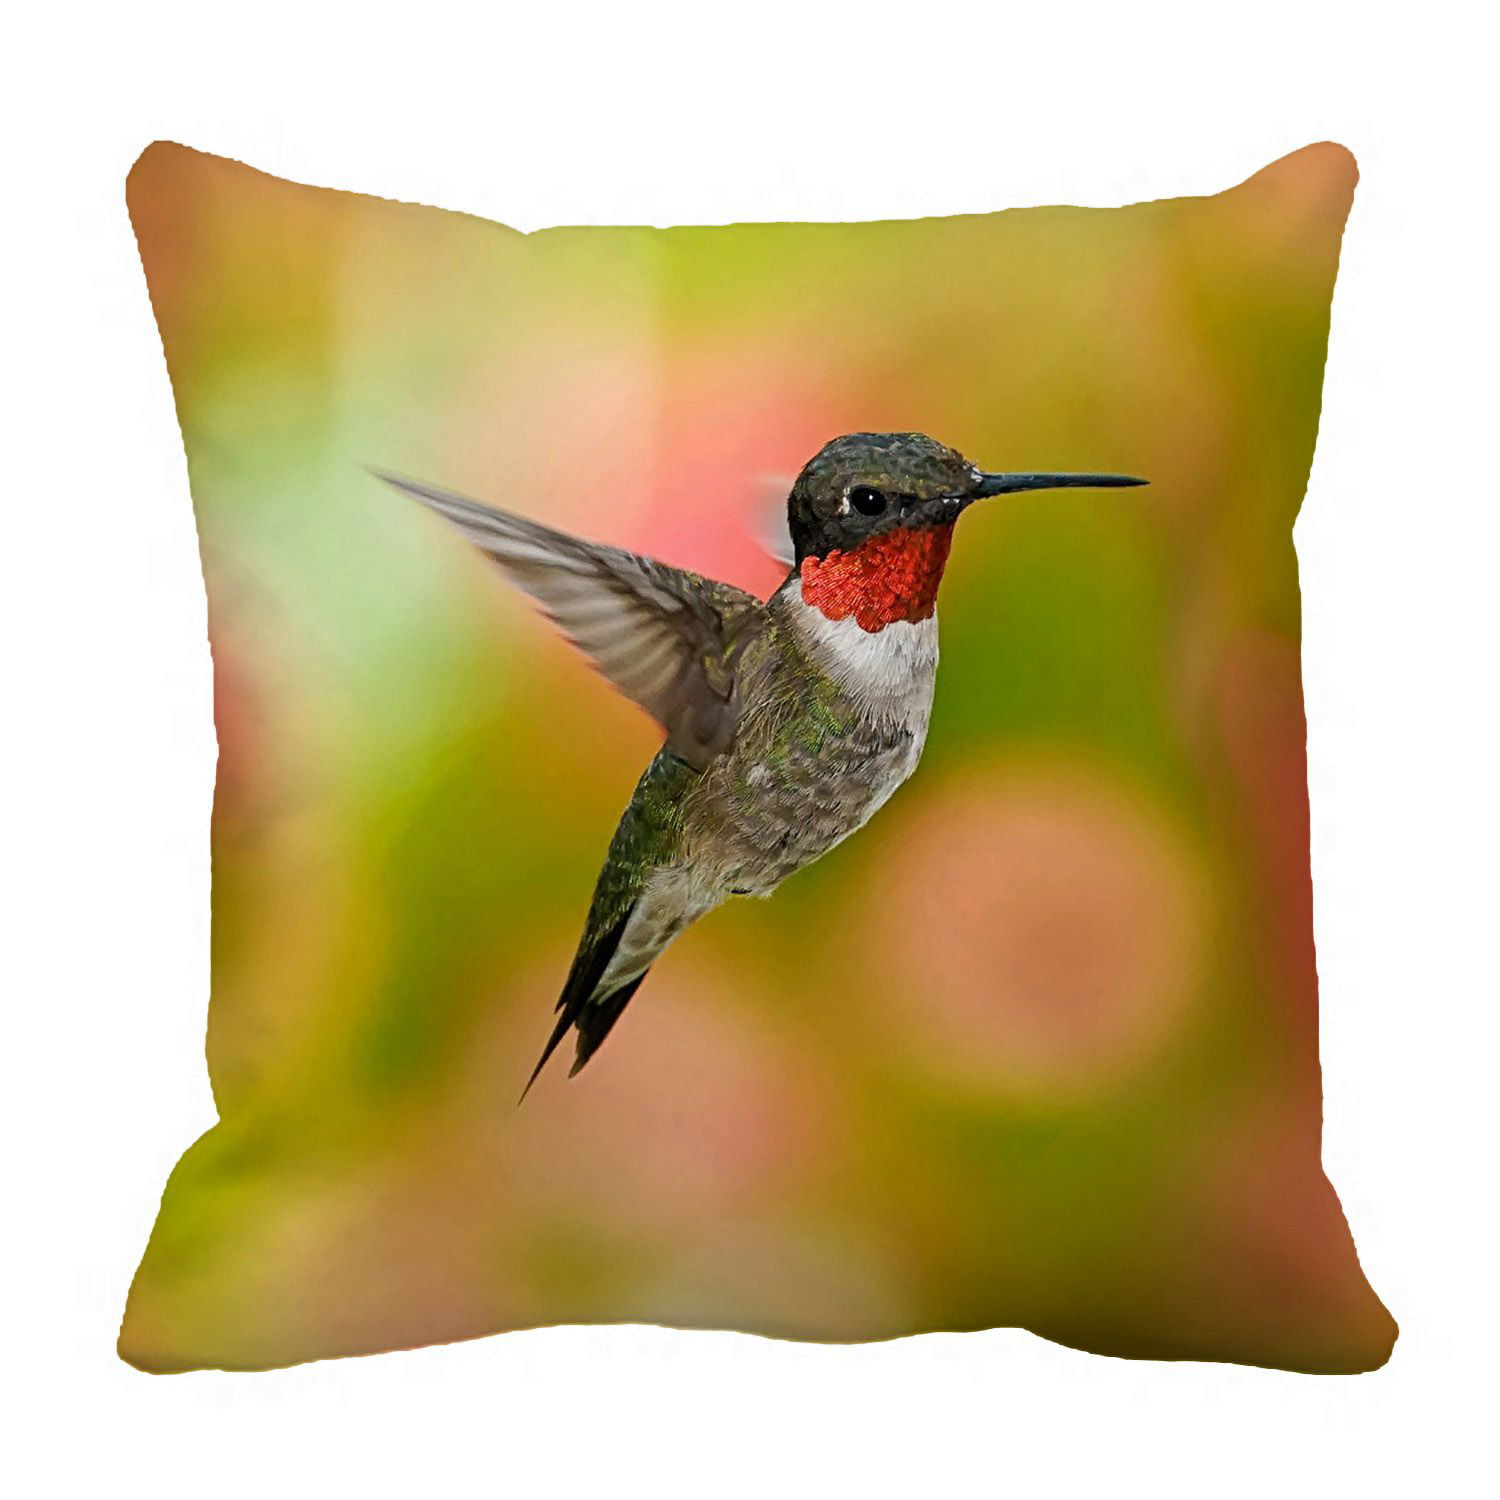 Pillow Case Sofa Home Decor Cushion Cover Hummingbird 18'Cotton Linen Animal